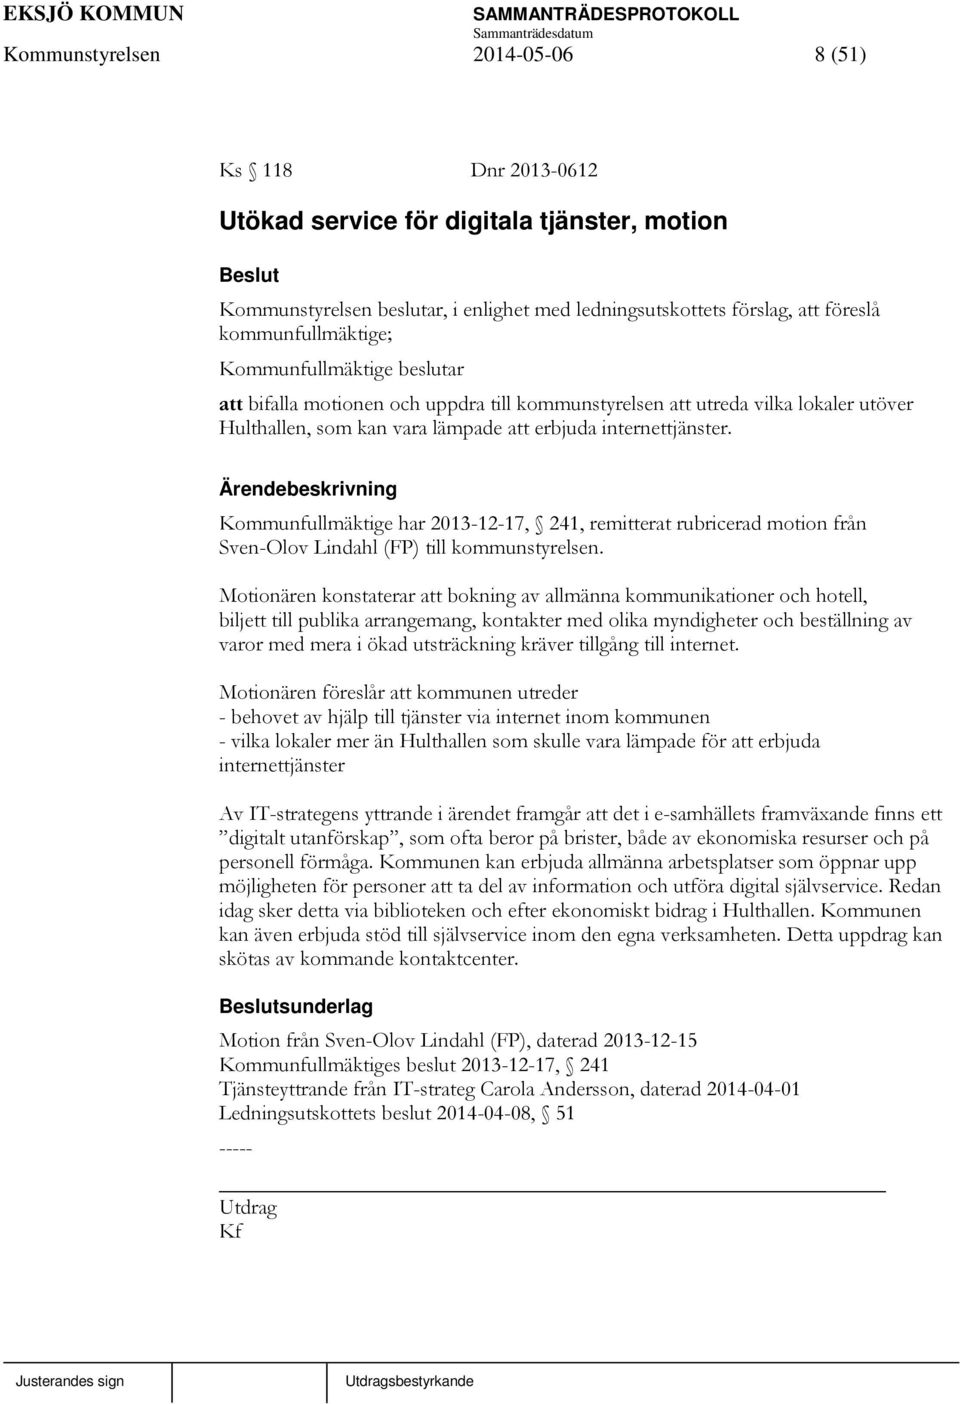 Kommunfullmäktige har 2013-12-17, 241, remitterat rubricerad motion från Sven-Olov Lindahl (FP) till kommunstyrelsen.